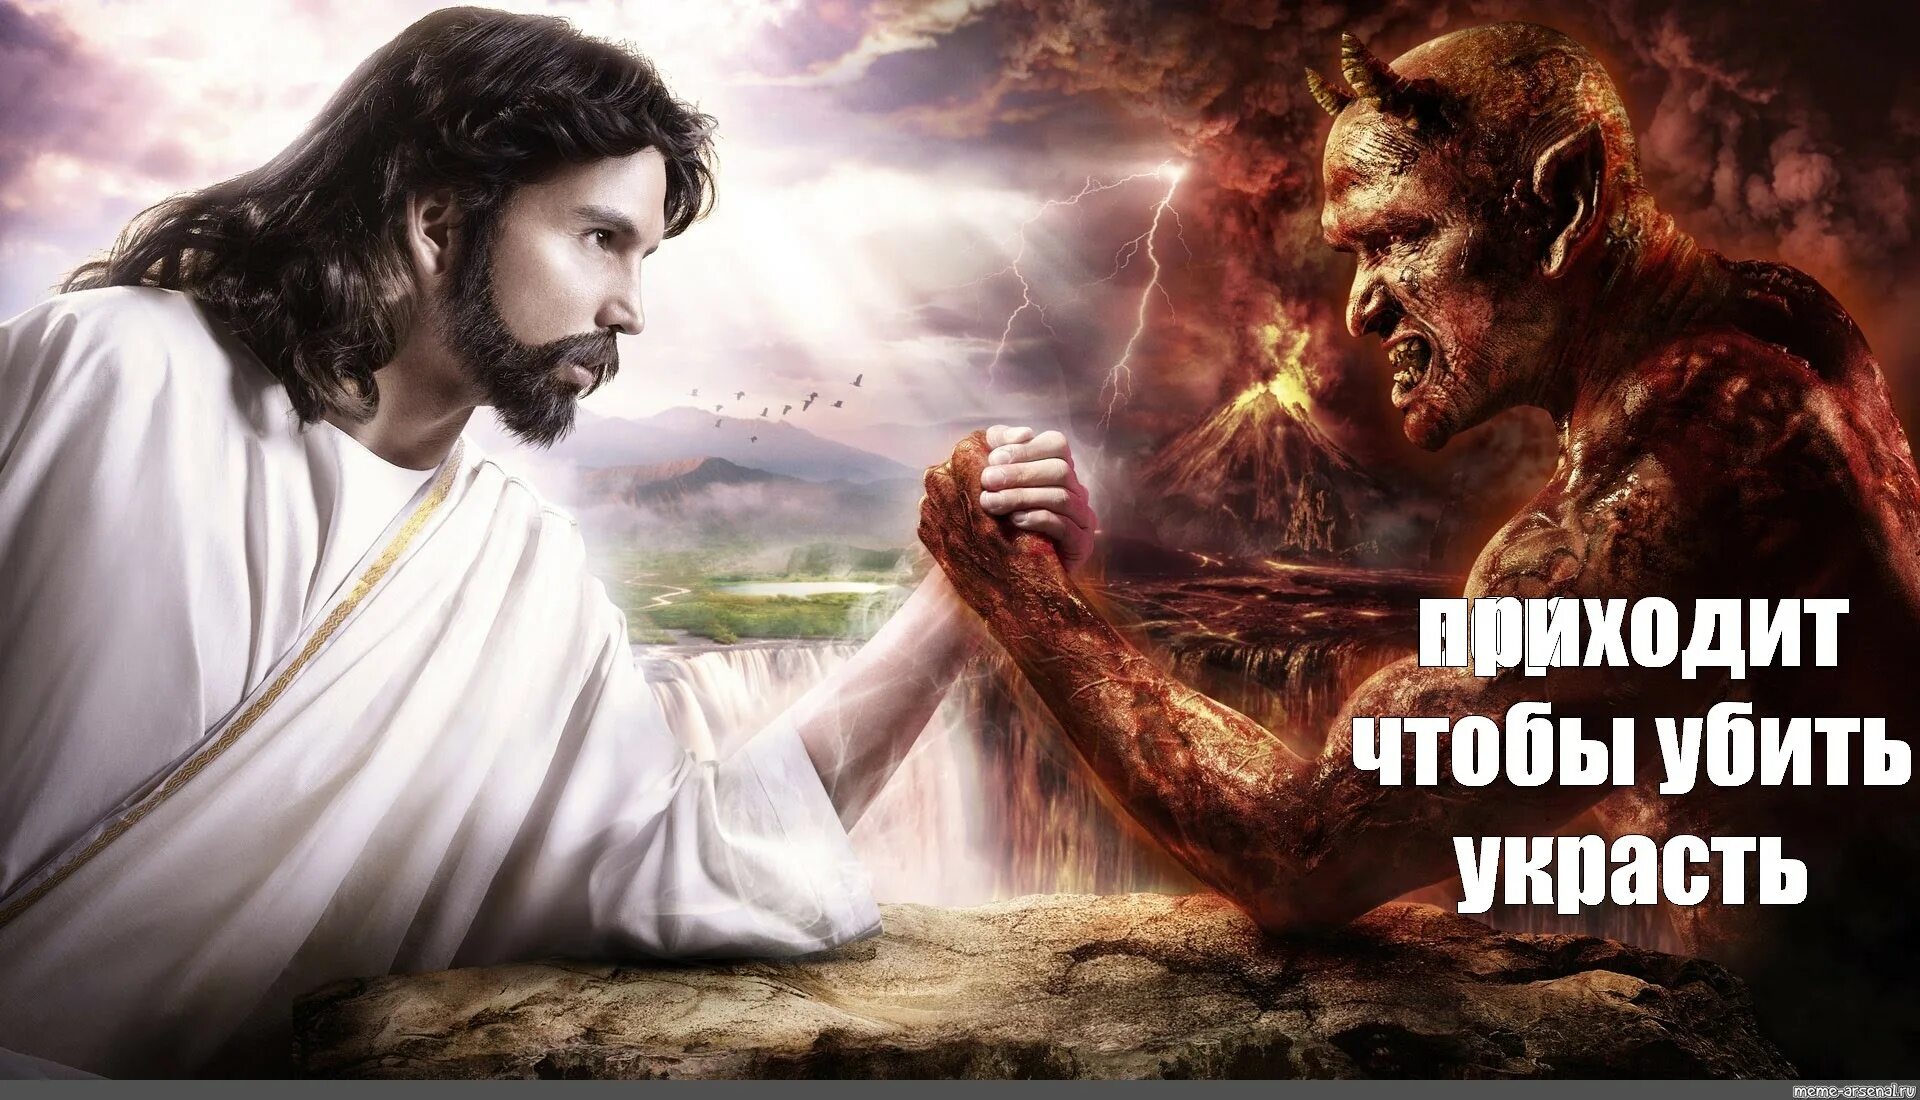 Он шел посередине. Бог и дьявол. Бог против дьявола. Иисус против дьявола. Христос и дьявол.